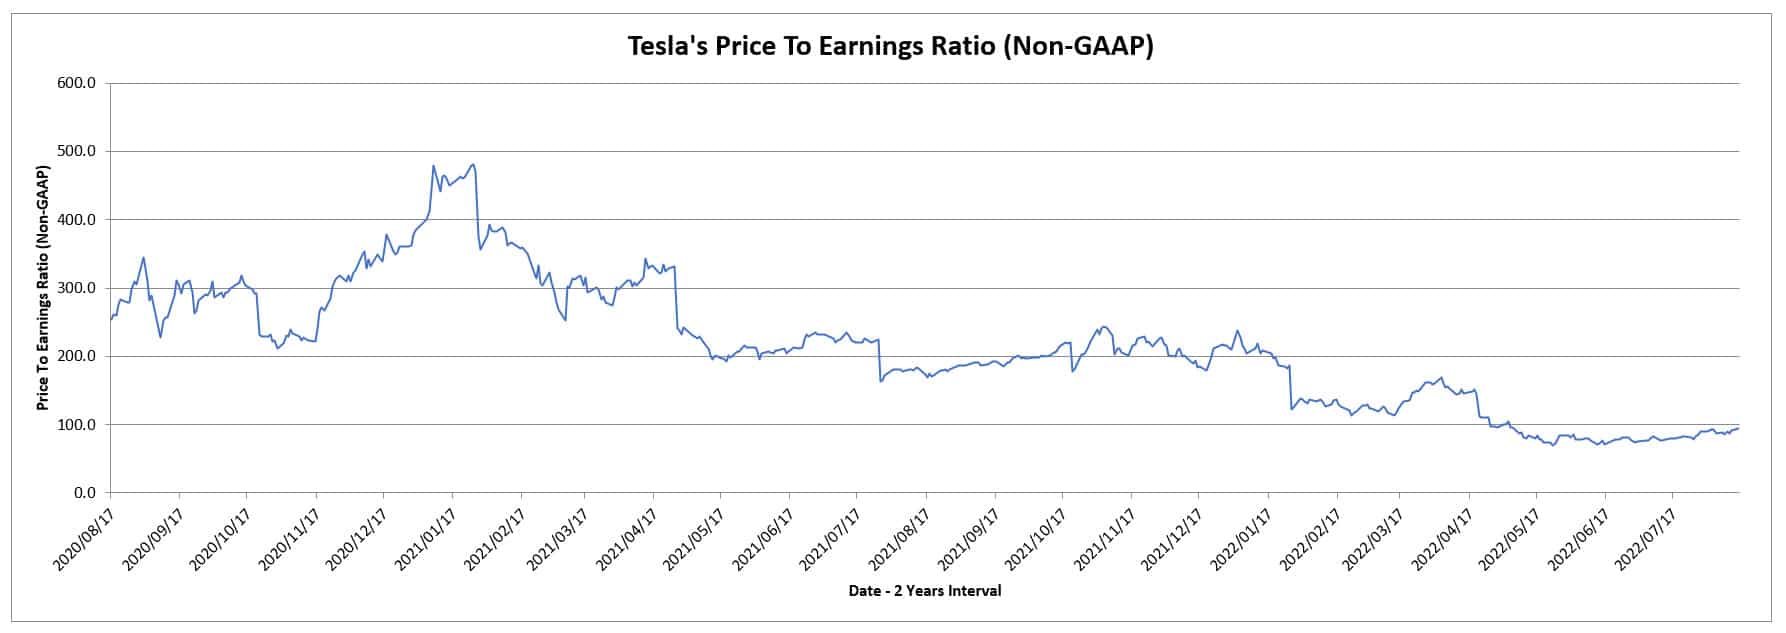 Tesla's price to earnings ratio